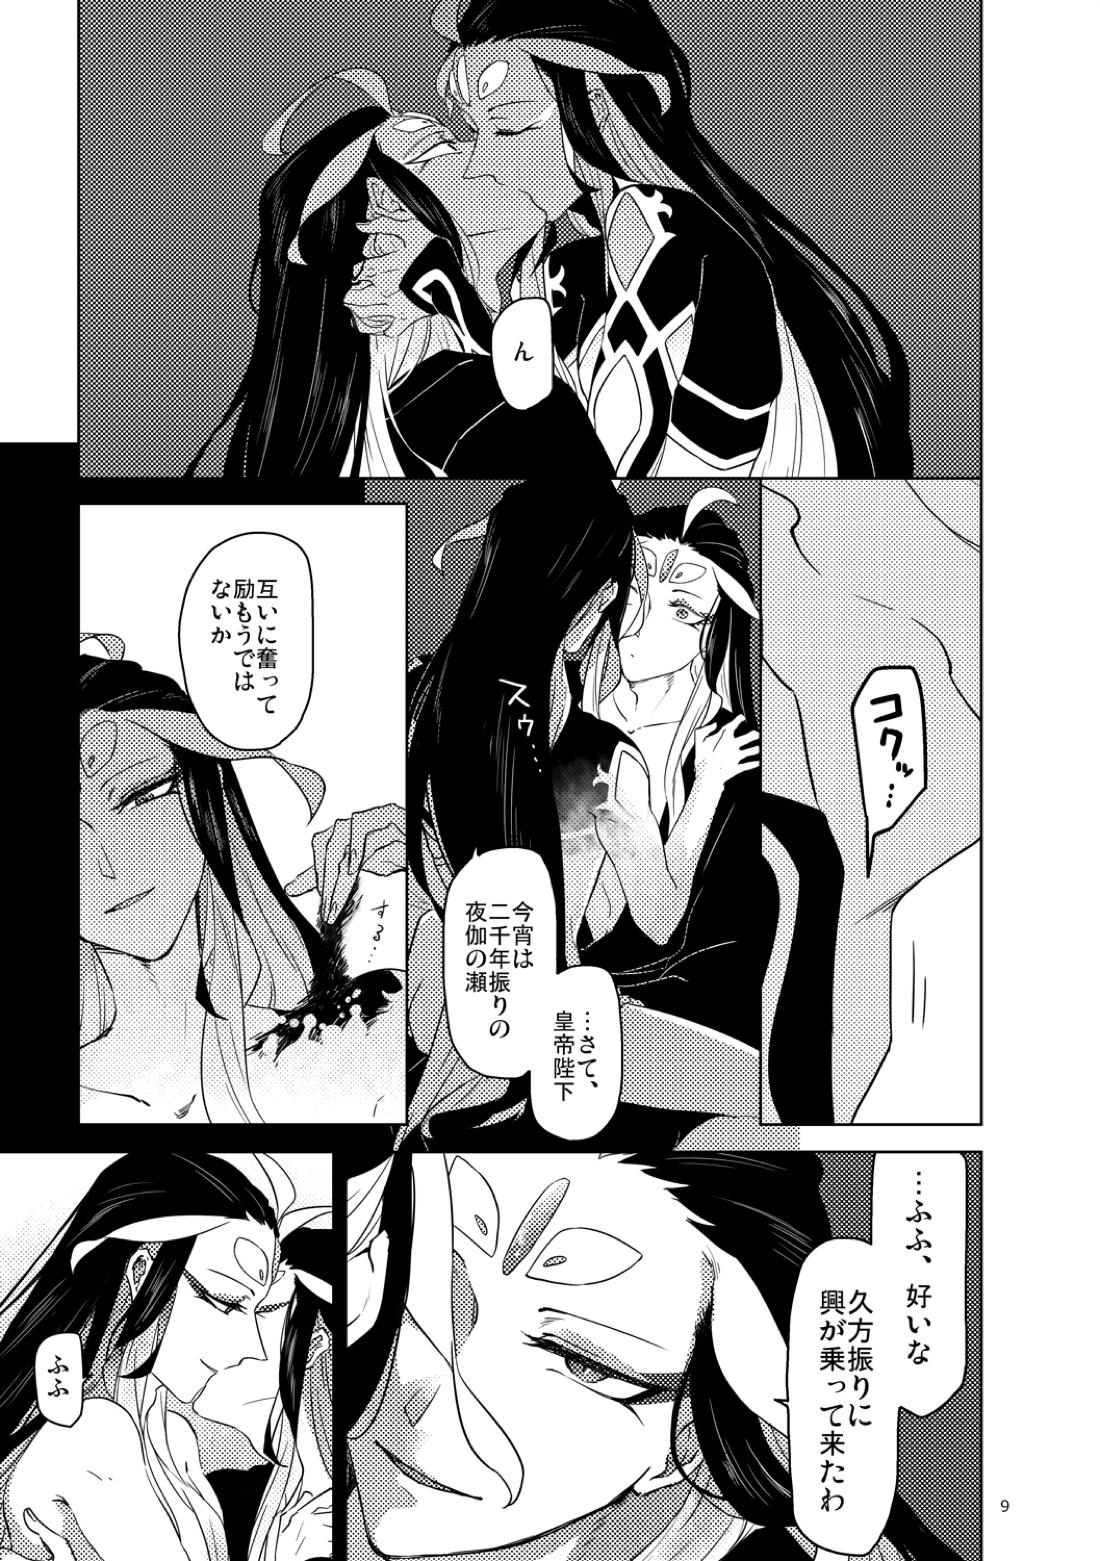 【BL漫画 Fate/Grand Order】男性体と無性体の始皇帝が同期するために媚薬を口にしながら肌を重ねるイチャイチャボーイズラブエッチ10